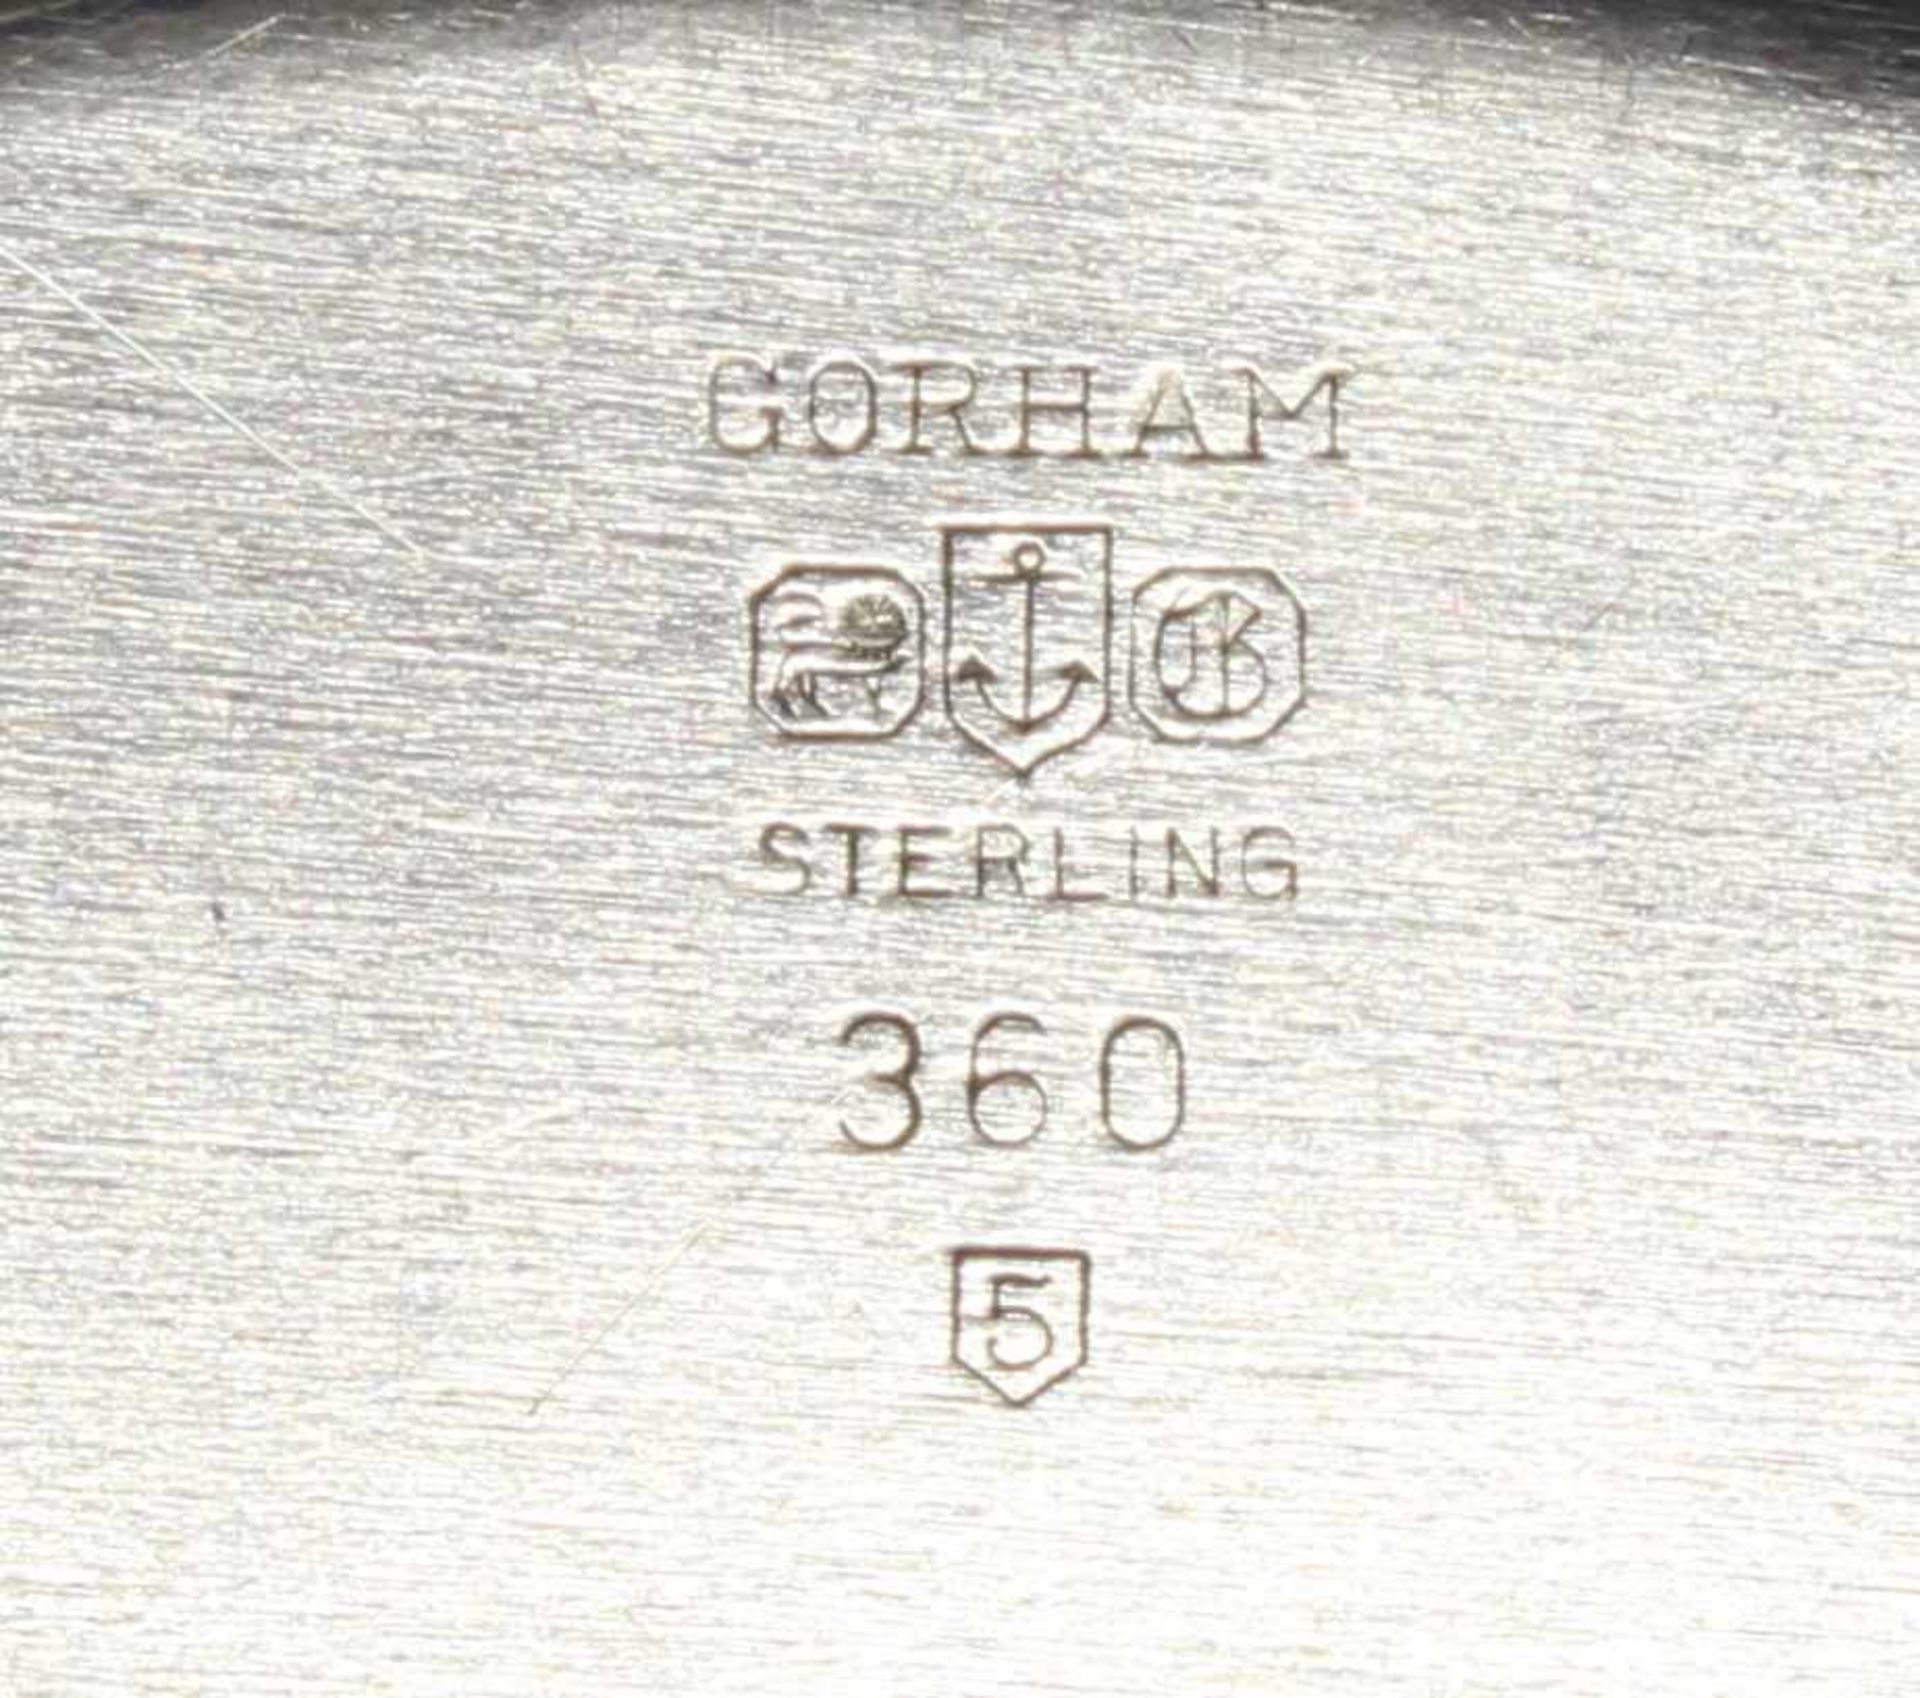 Saucière mit Présentoir, Silber 925, Gorham, profilierter Rand, gesamt 11 x 22 x 13.7 cm, zus. ca. - Image 4 of 4